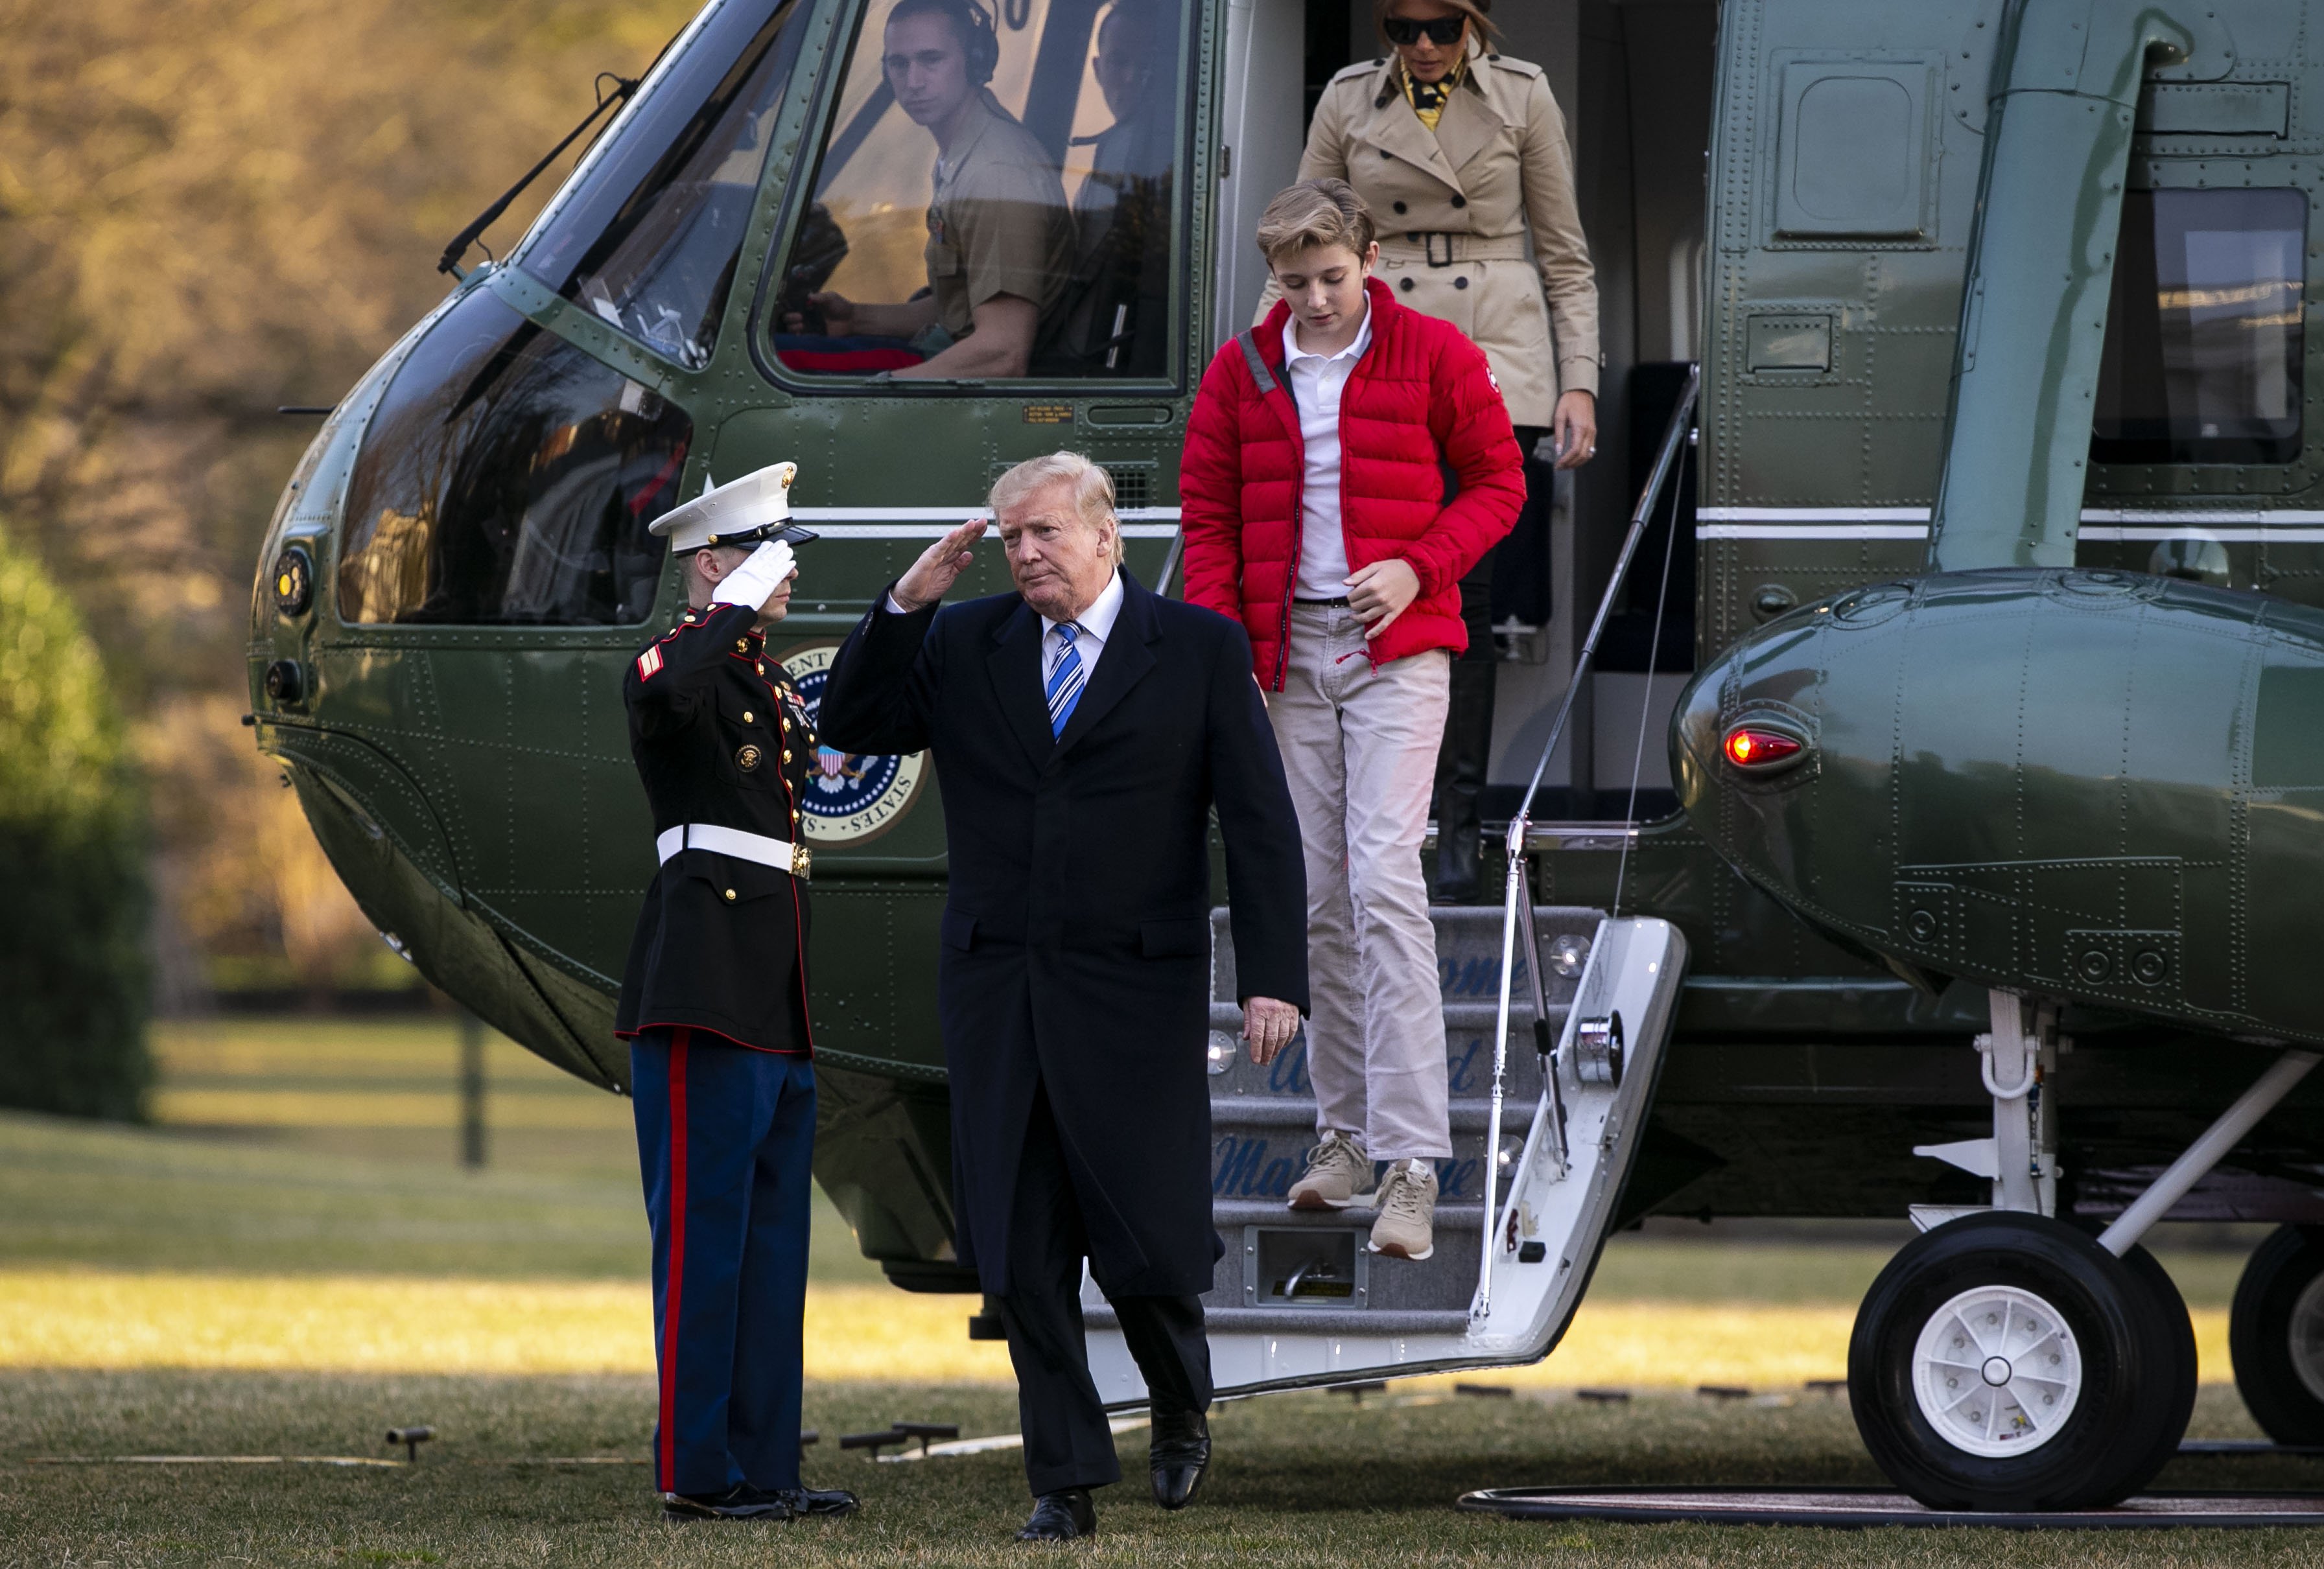 Donald Trump descendant de Marine One Melania Trump et leur fils Barron Trump sur la pelouse sud de la Maison Blanche, à Washington, DC | source : Getty Images